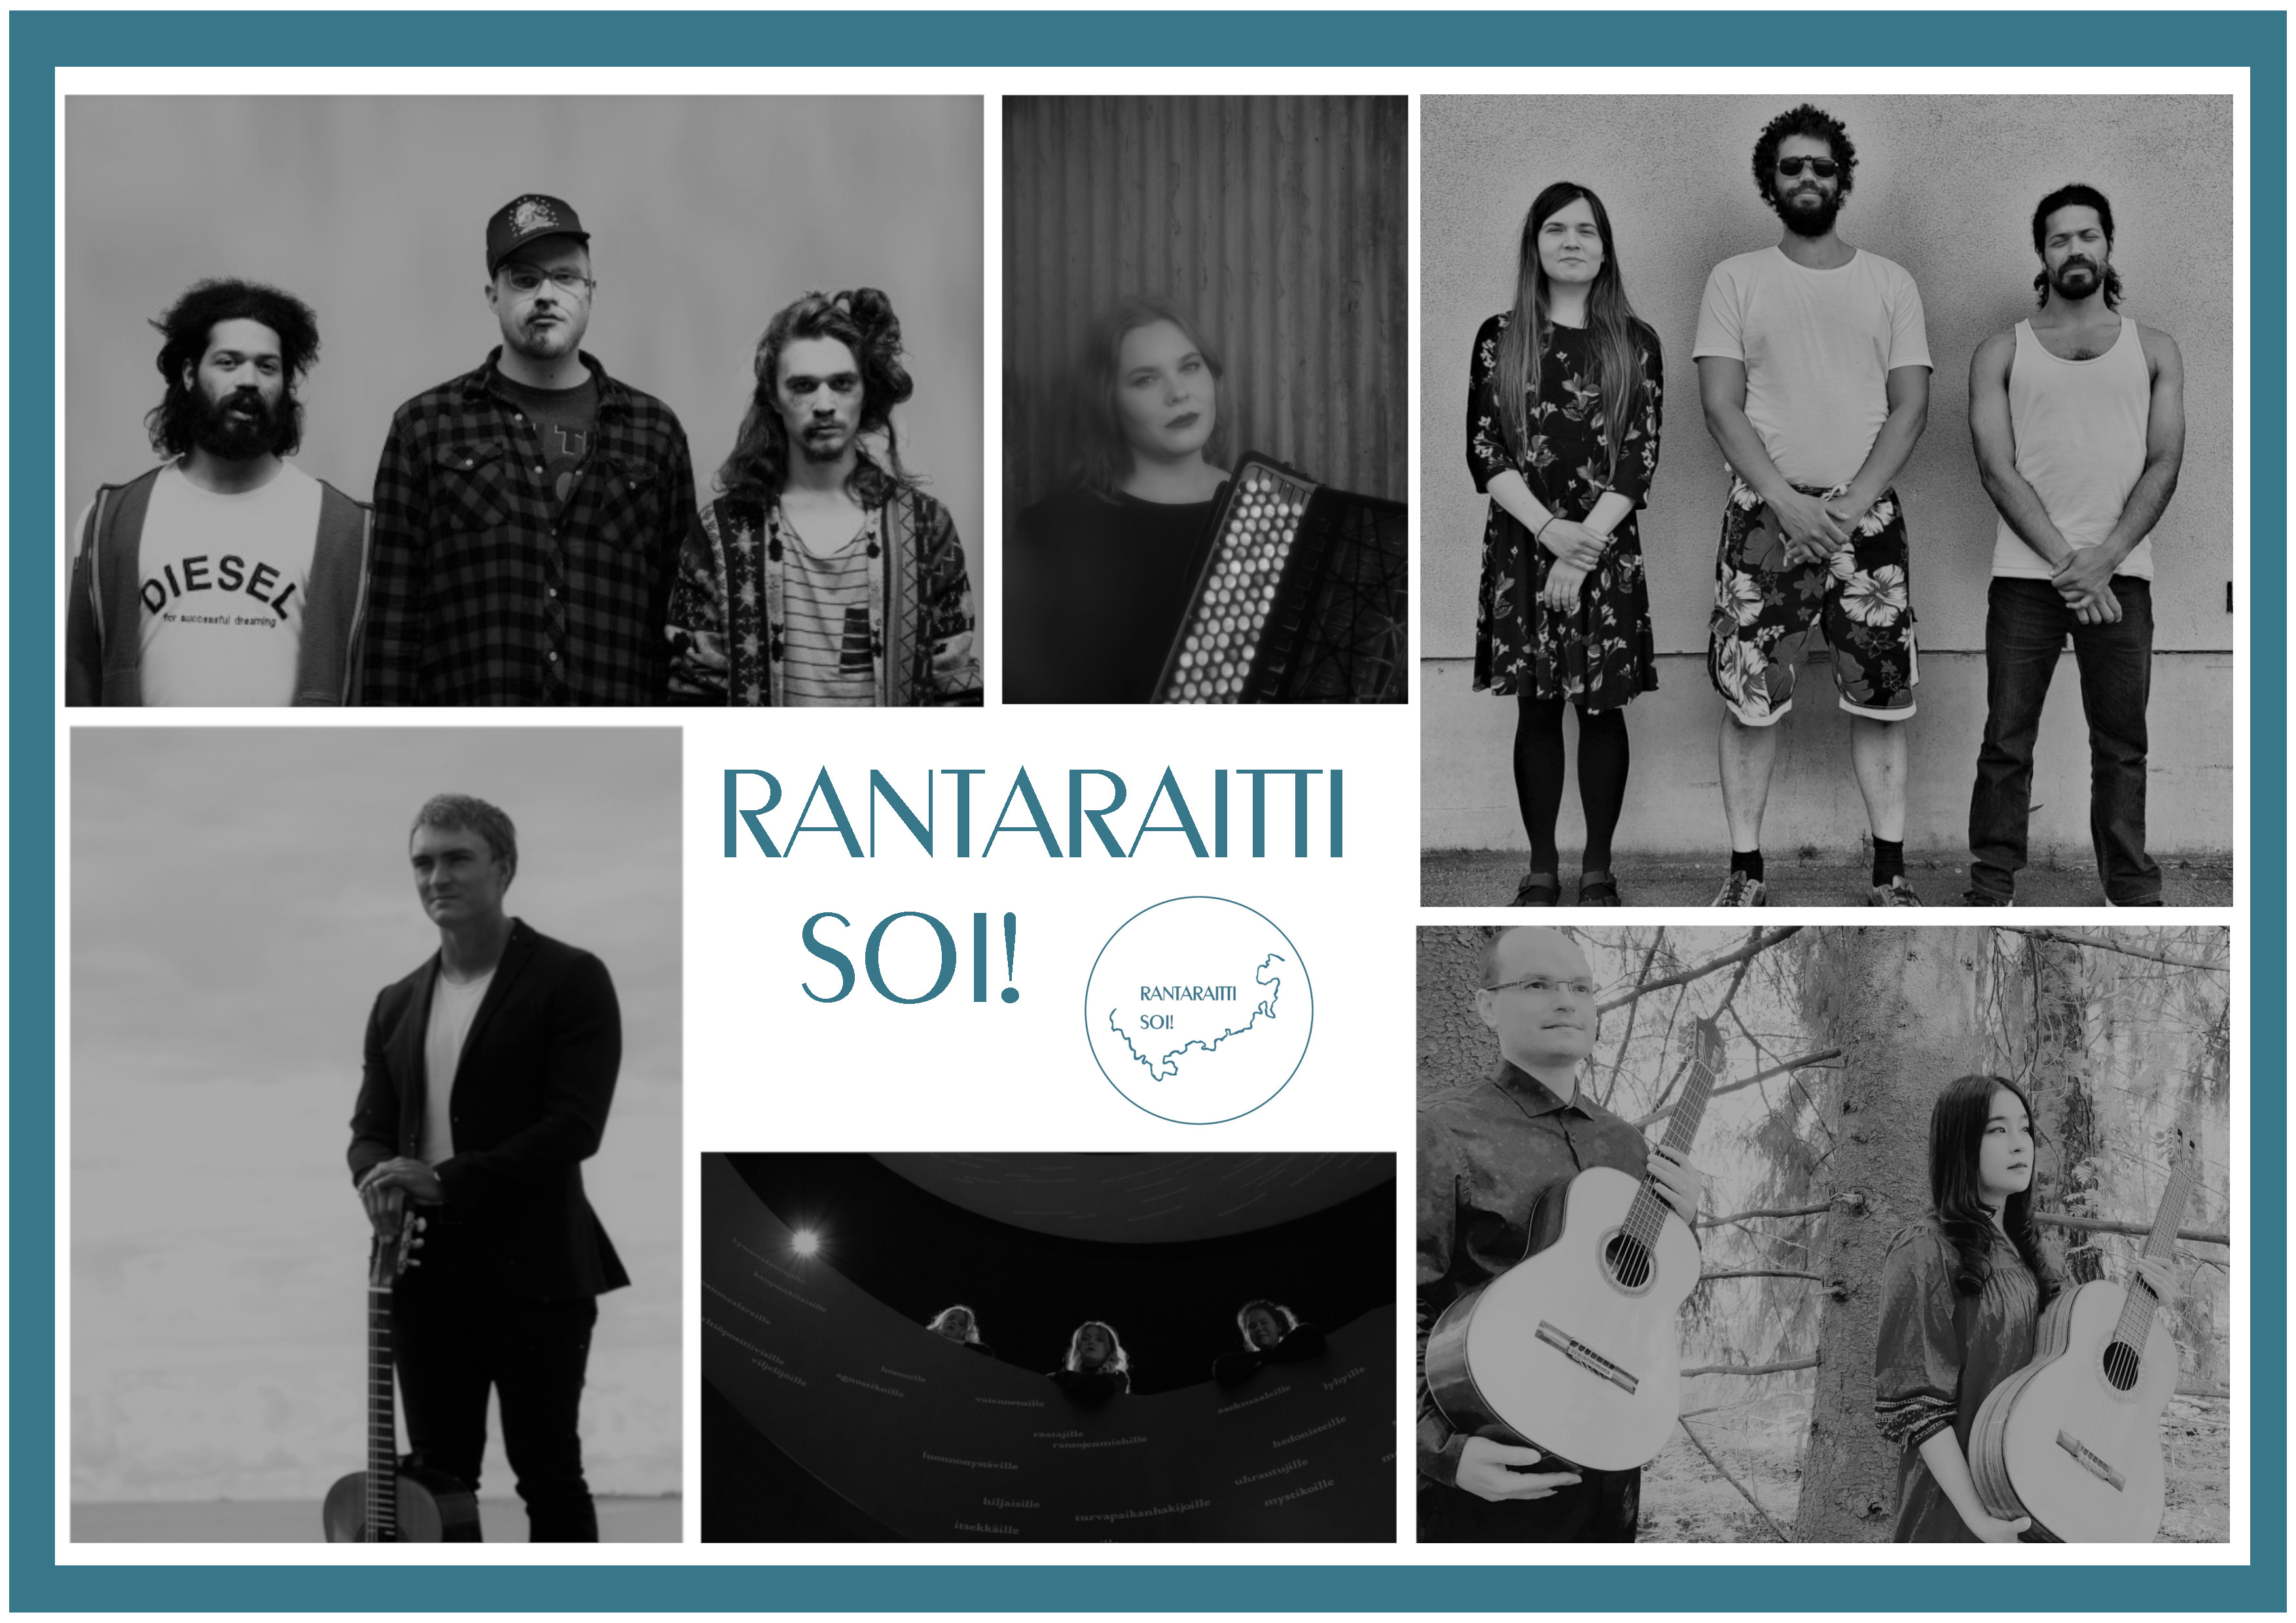 Mustavalkoinen kollaasikuva Rantaraitti soi! -festivaalin esiintyjistä, tapahtuman logo, jonka vieressä lukee "Rantaraitti soi!". Osa esiintyjistä poseeraa soittimiensa kanssa.